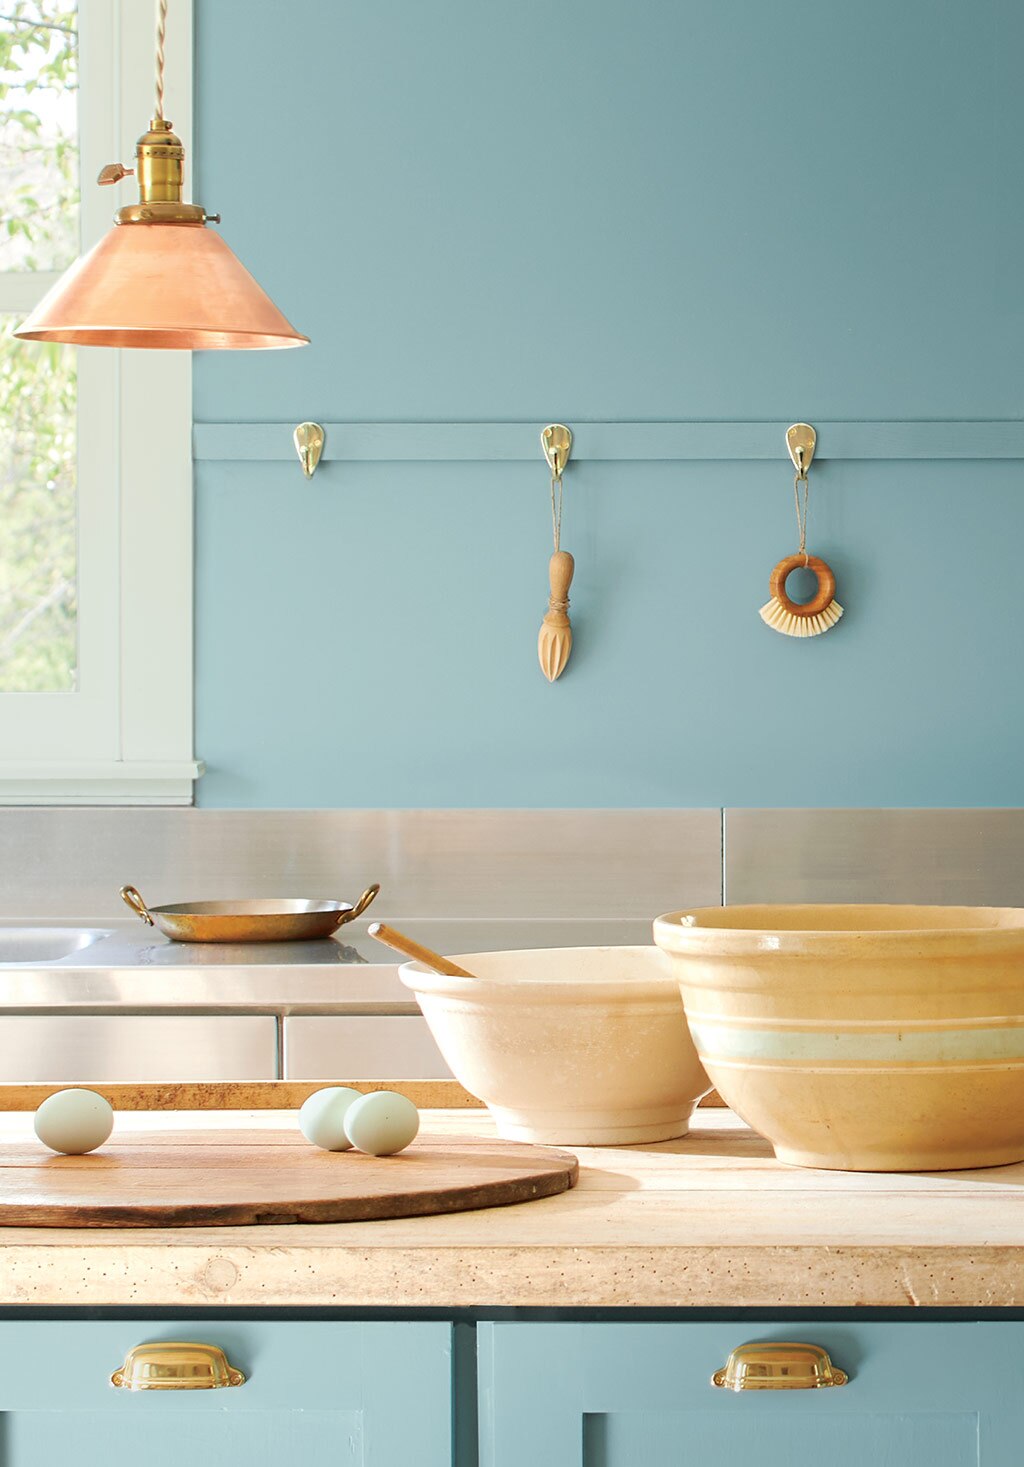 Une cuisine aux murs et armoires enduits de la couleur de l’année 2021, Vert Antique 2136-40.